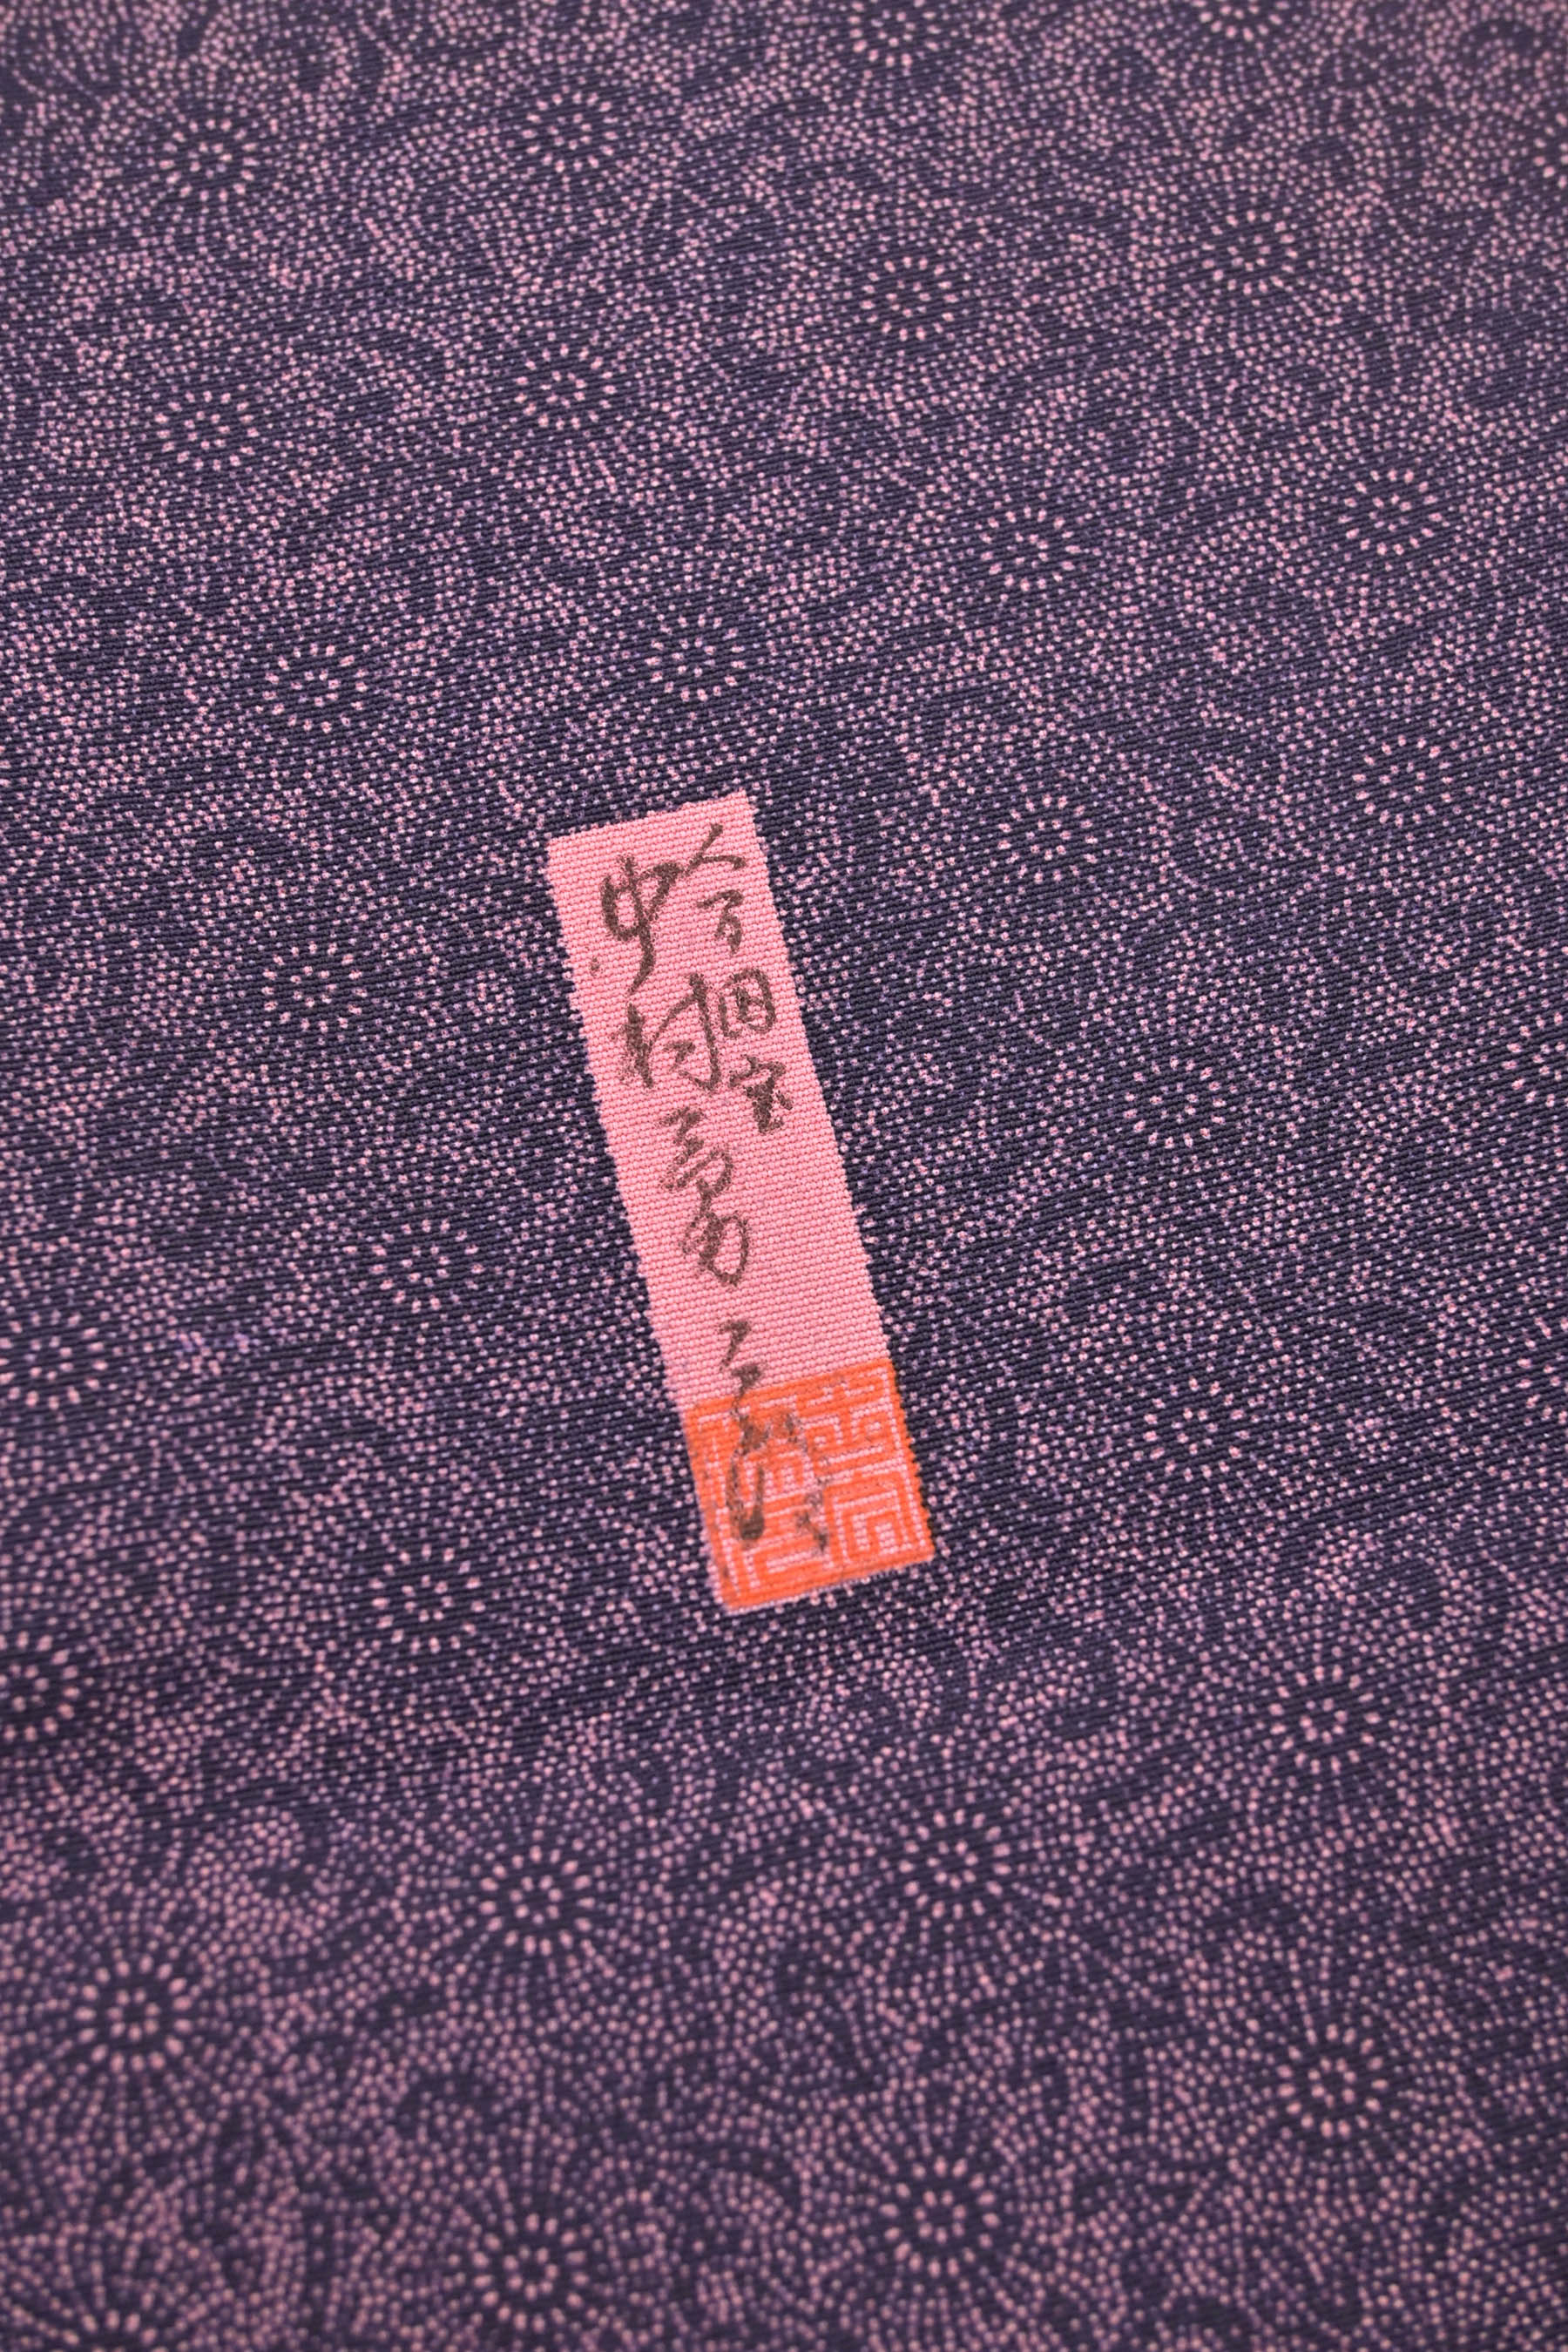 輸入 人間国宝 中村勇二郎作の花々の地模様が美しい江戸小紋 新品